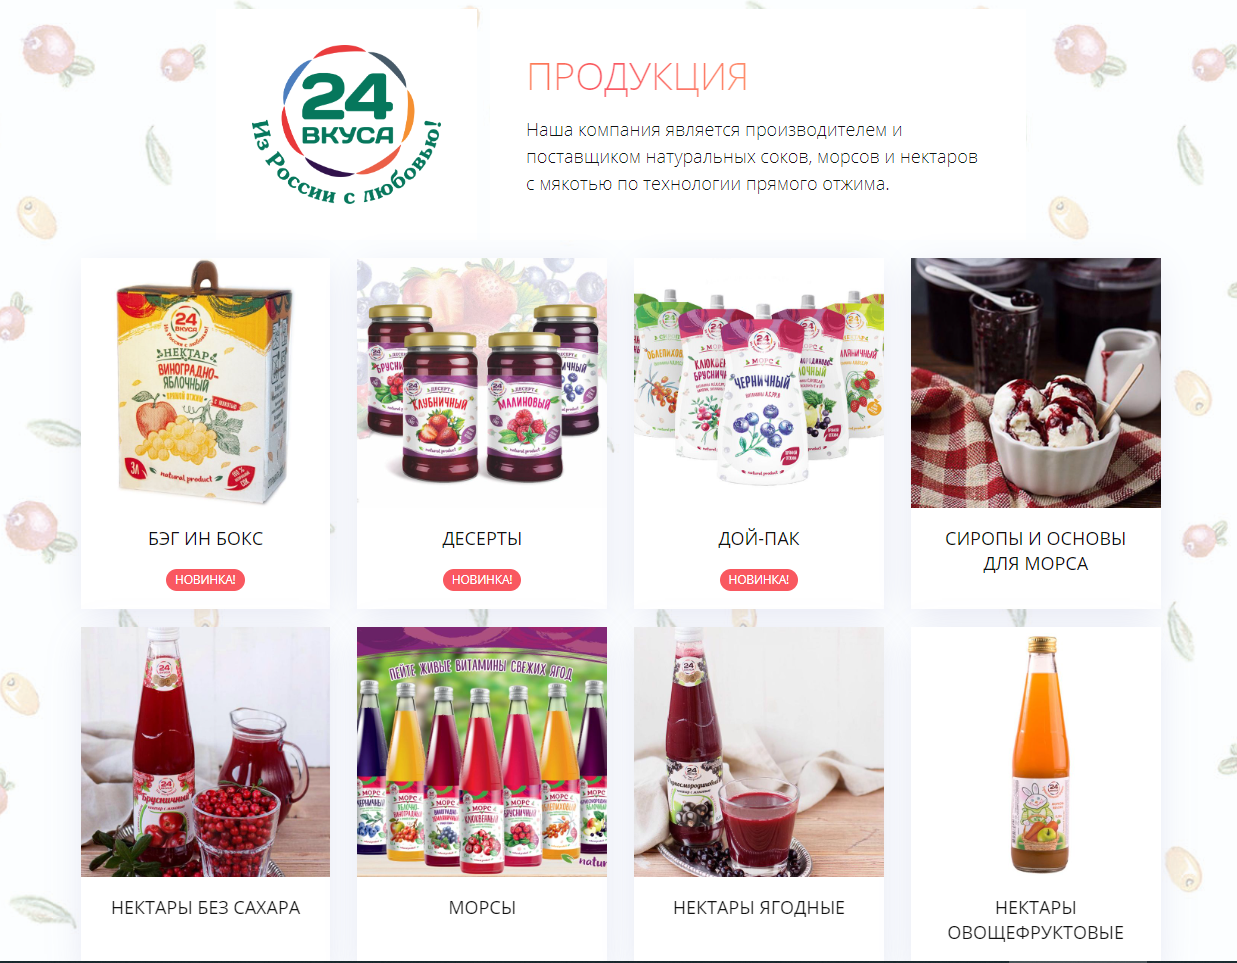 Московским предпринимателям представили линейку продуктов для здорового питания